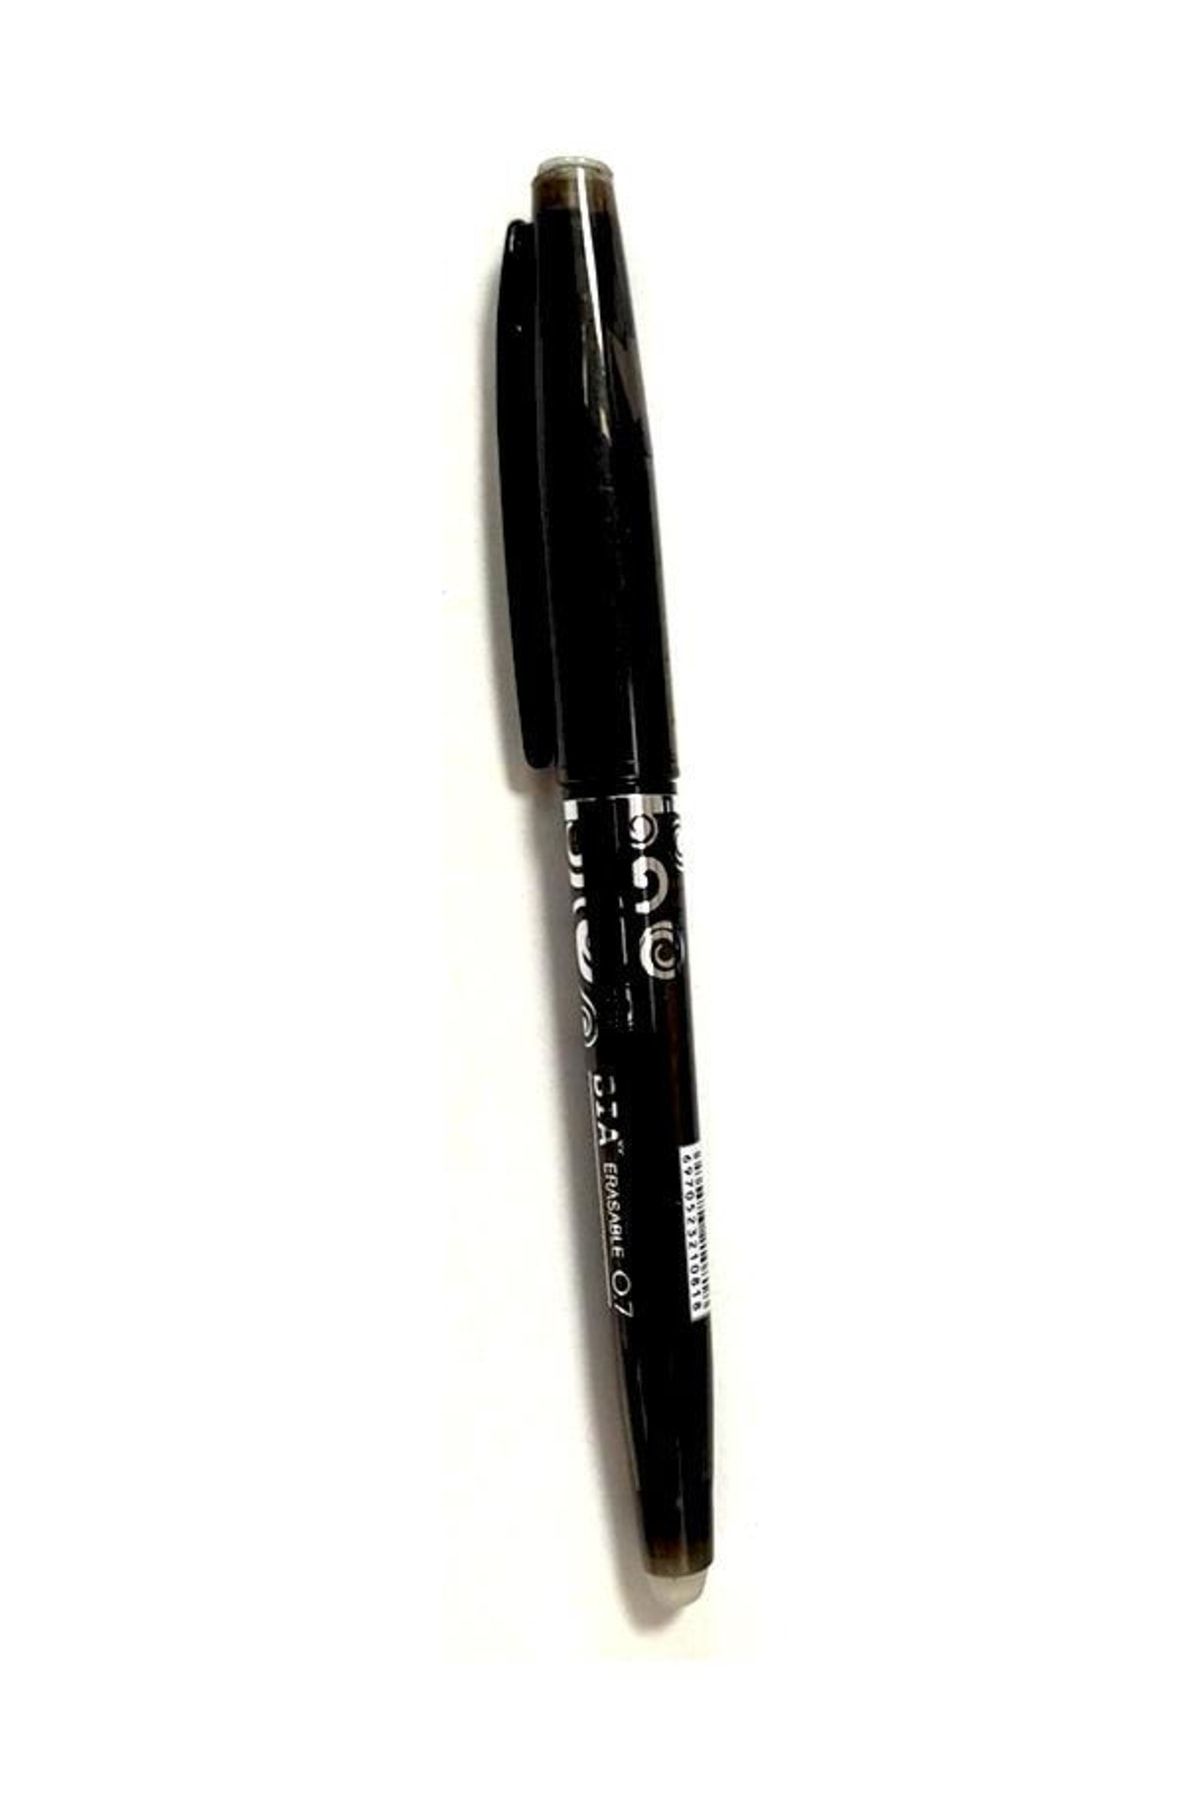 Bia Silinebilir Tükenmez Kalem Ütüyle Isıyla Uçan Silinen Kumaş Kalemi 1 Adet Siyah